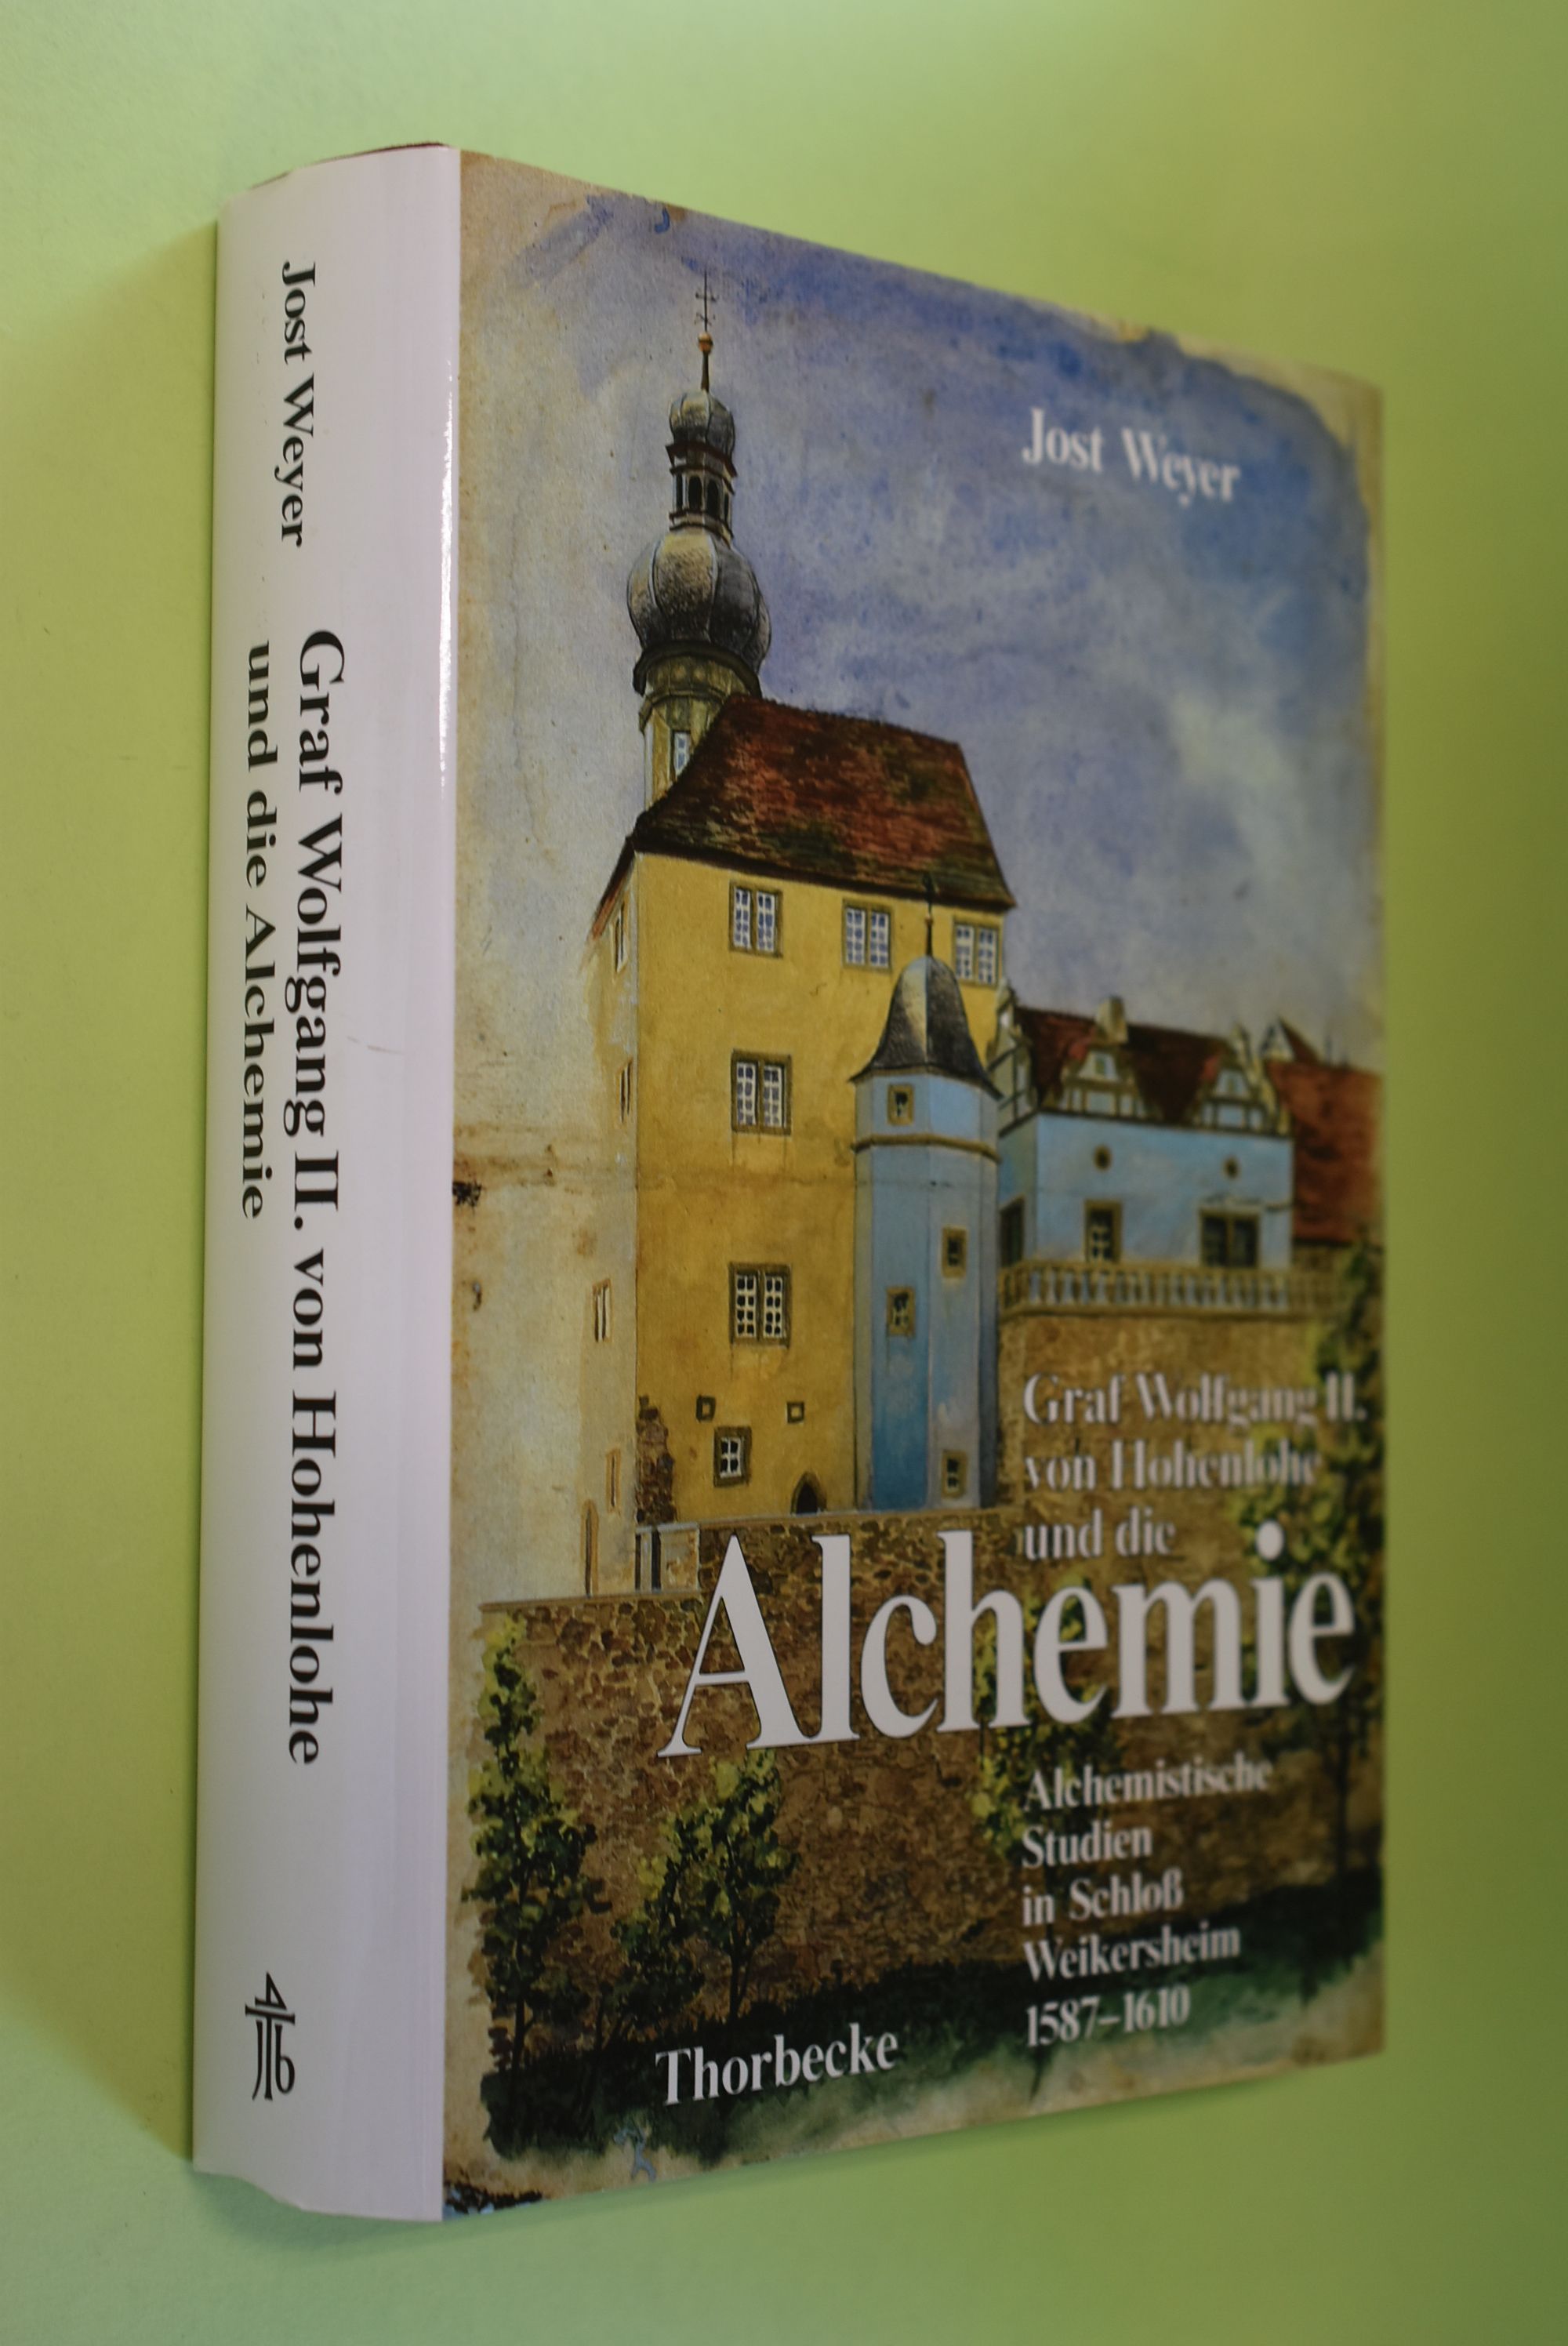 Graf Wolfgang II. von Hohenlohe und die Alchemie : alchemistische Studien in Schloss Weikersheim 1587 - 1610. Forschungen aus Württembergisch-Franken ; Bd. 39 - Weyer, Jost